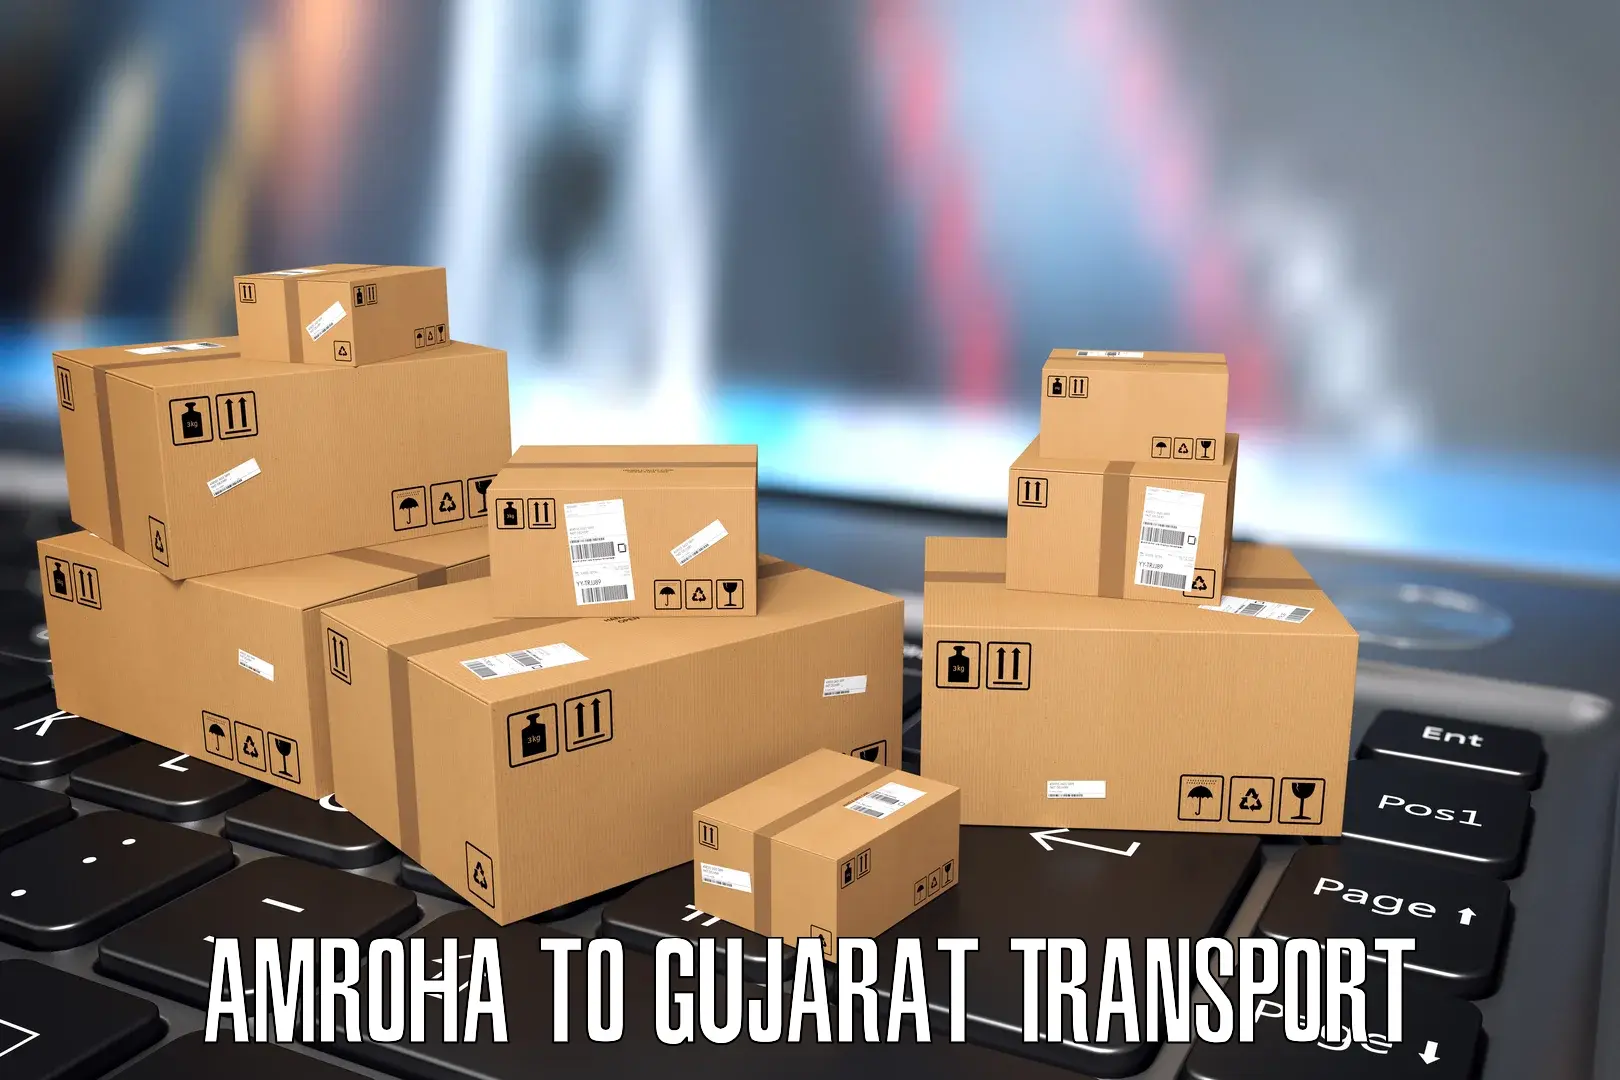 Two wheeler parcel service Amroha to Modasa